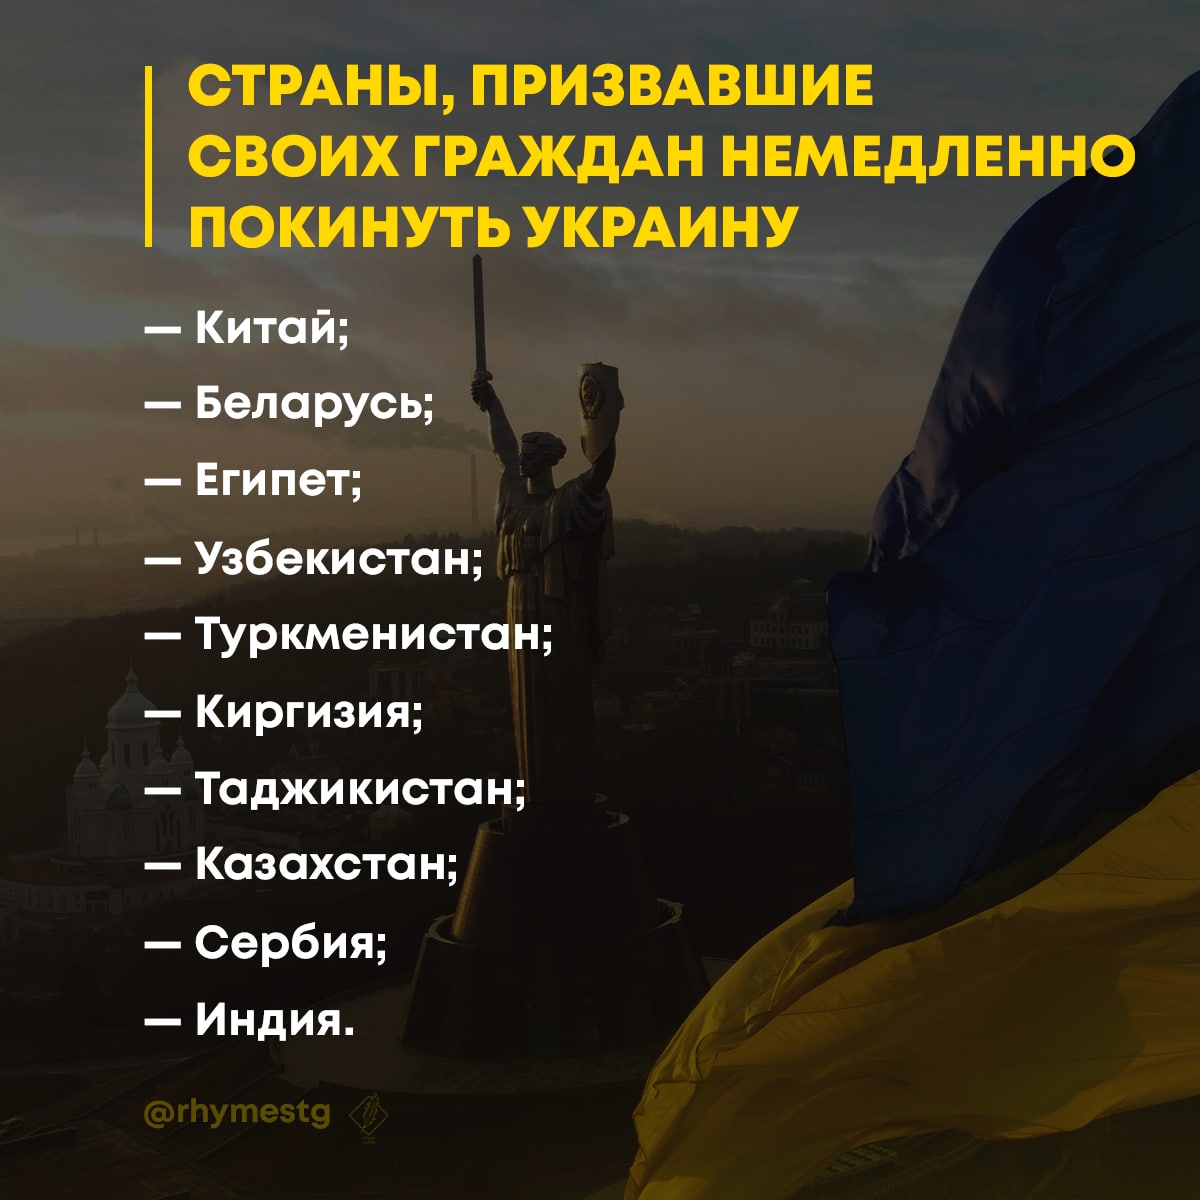 35 Стран рекомендовали своим гражданам покинуть Украину. Сша рекомендовали своим гражданам покинуть россию